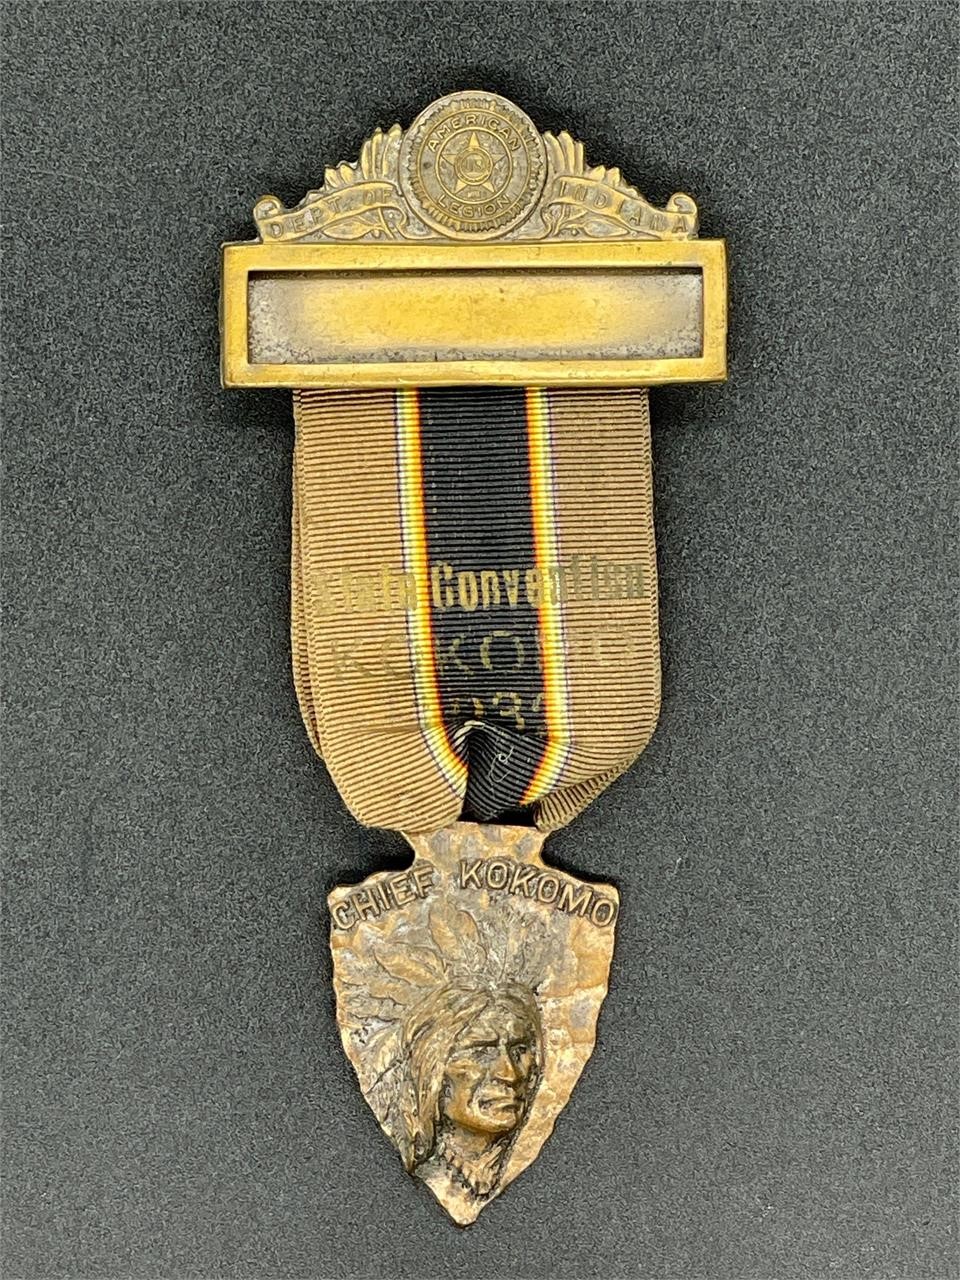 1934 Kokomo, IN American Legion state con. pin